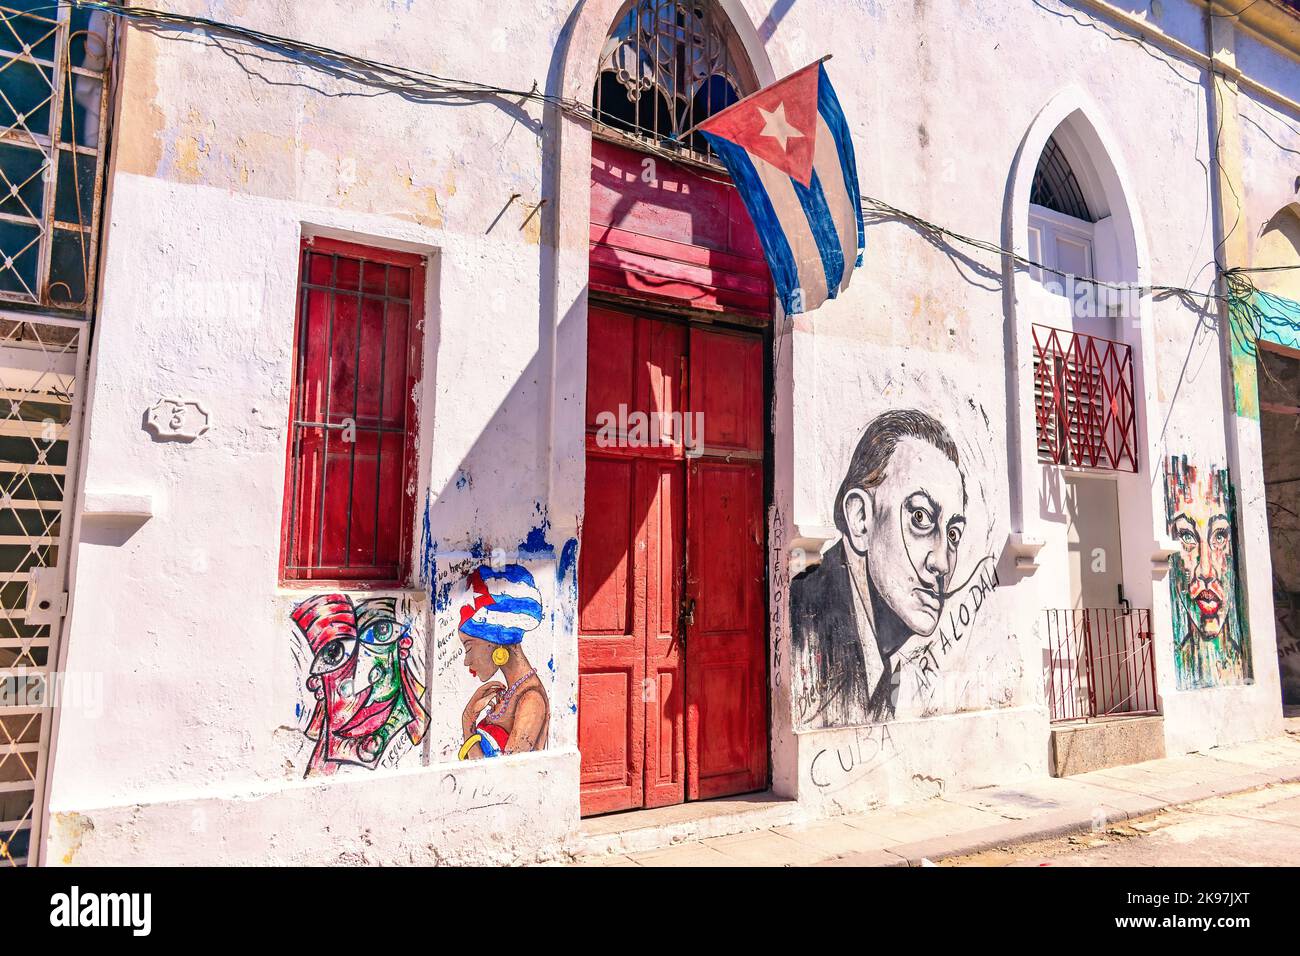 Façade d'un bâtiment aux peintures urbaines et drapeau cubain sur la porte d'entrée Banque D'Images